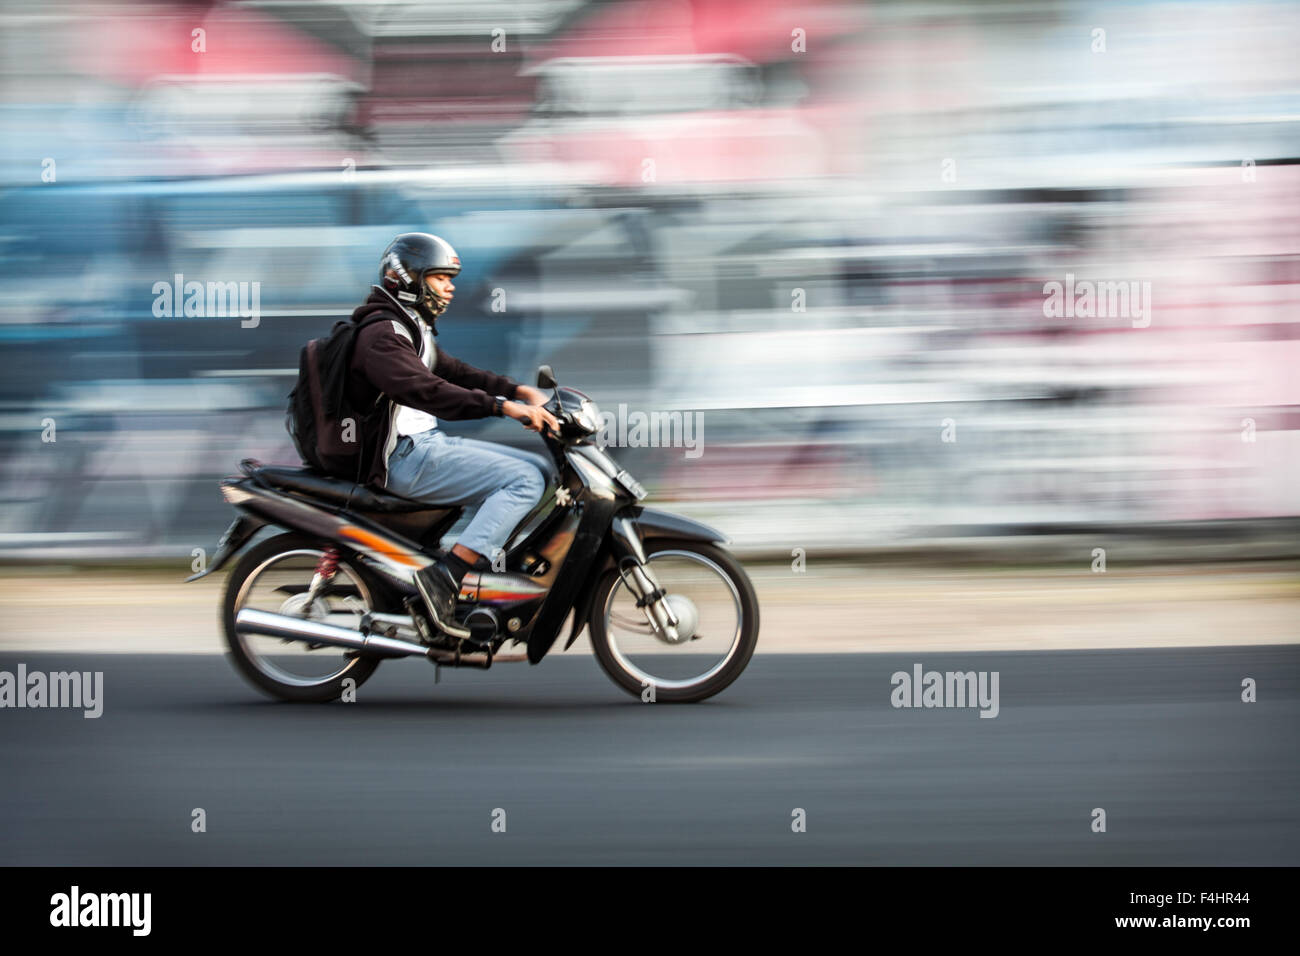 Il panning fotografia immagine del motociclista accelerando da una offuscata coperto di graffiti. parete effetti fotografici creati mediante panning e rallentare la velocità dello shutter Foto Stock